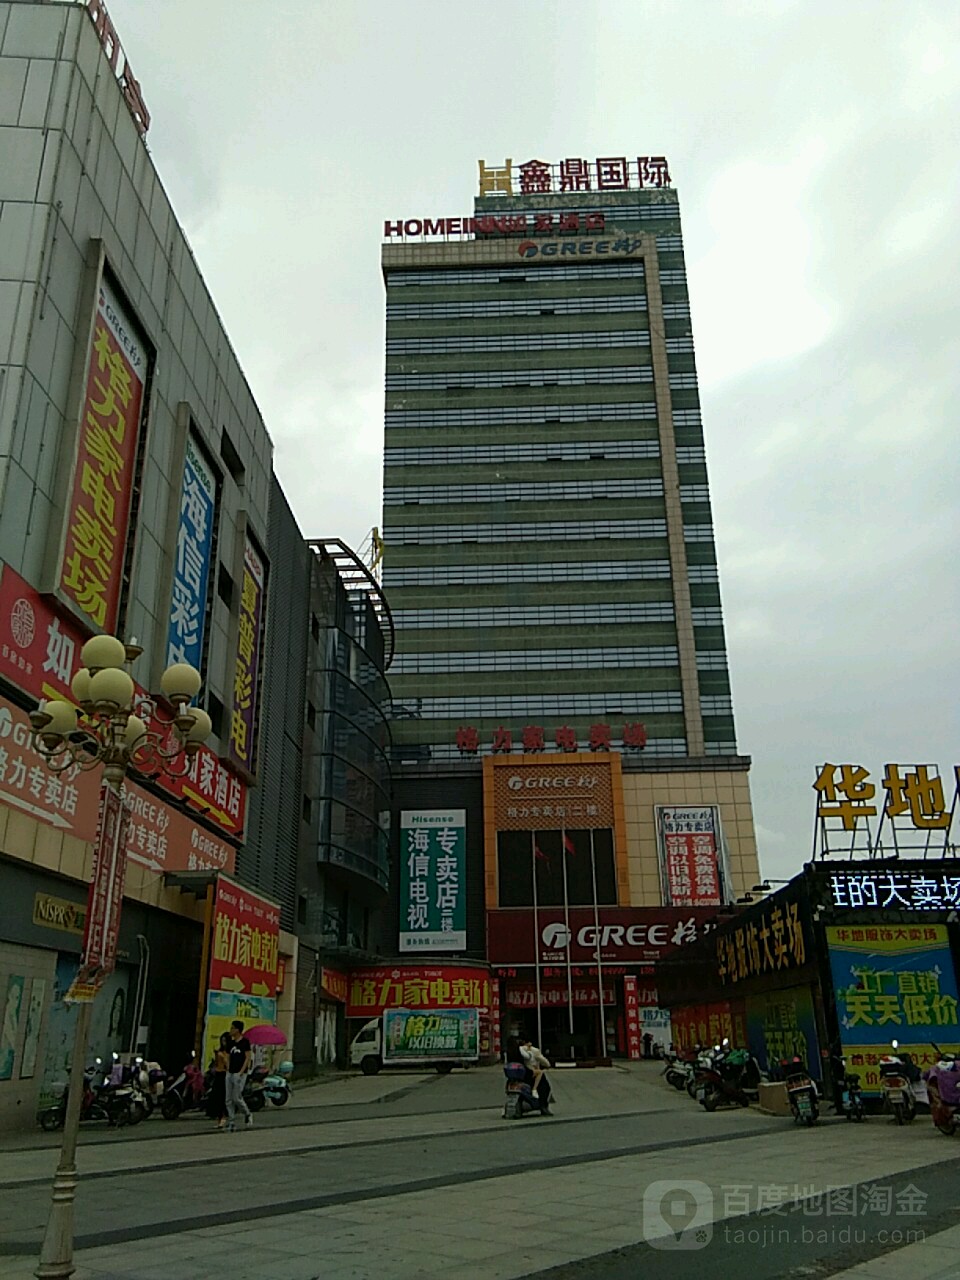 鑫鼎国际商场